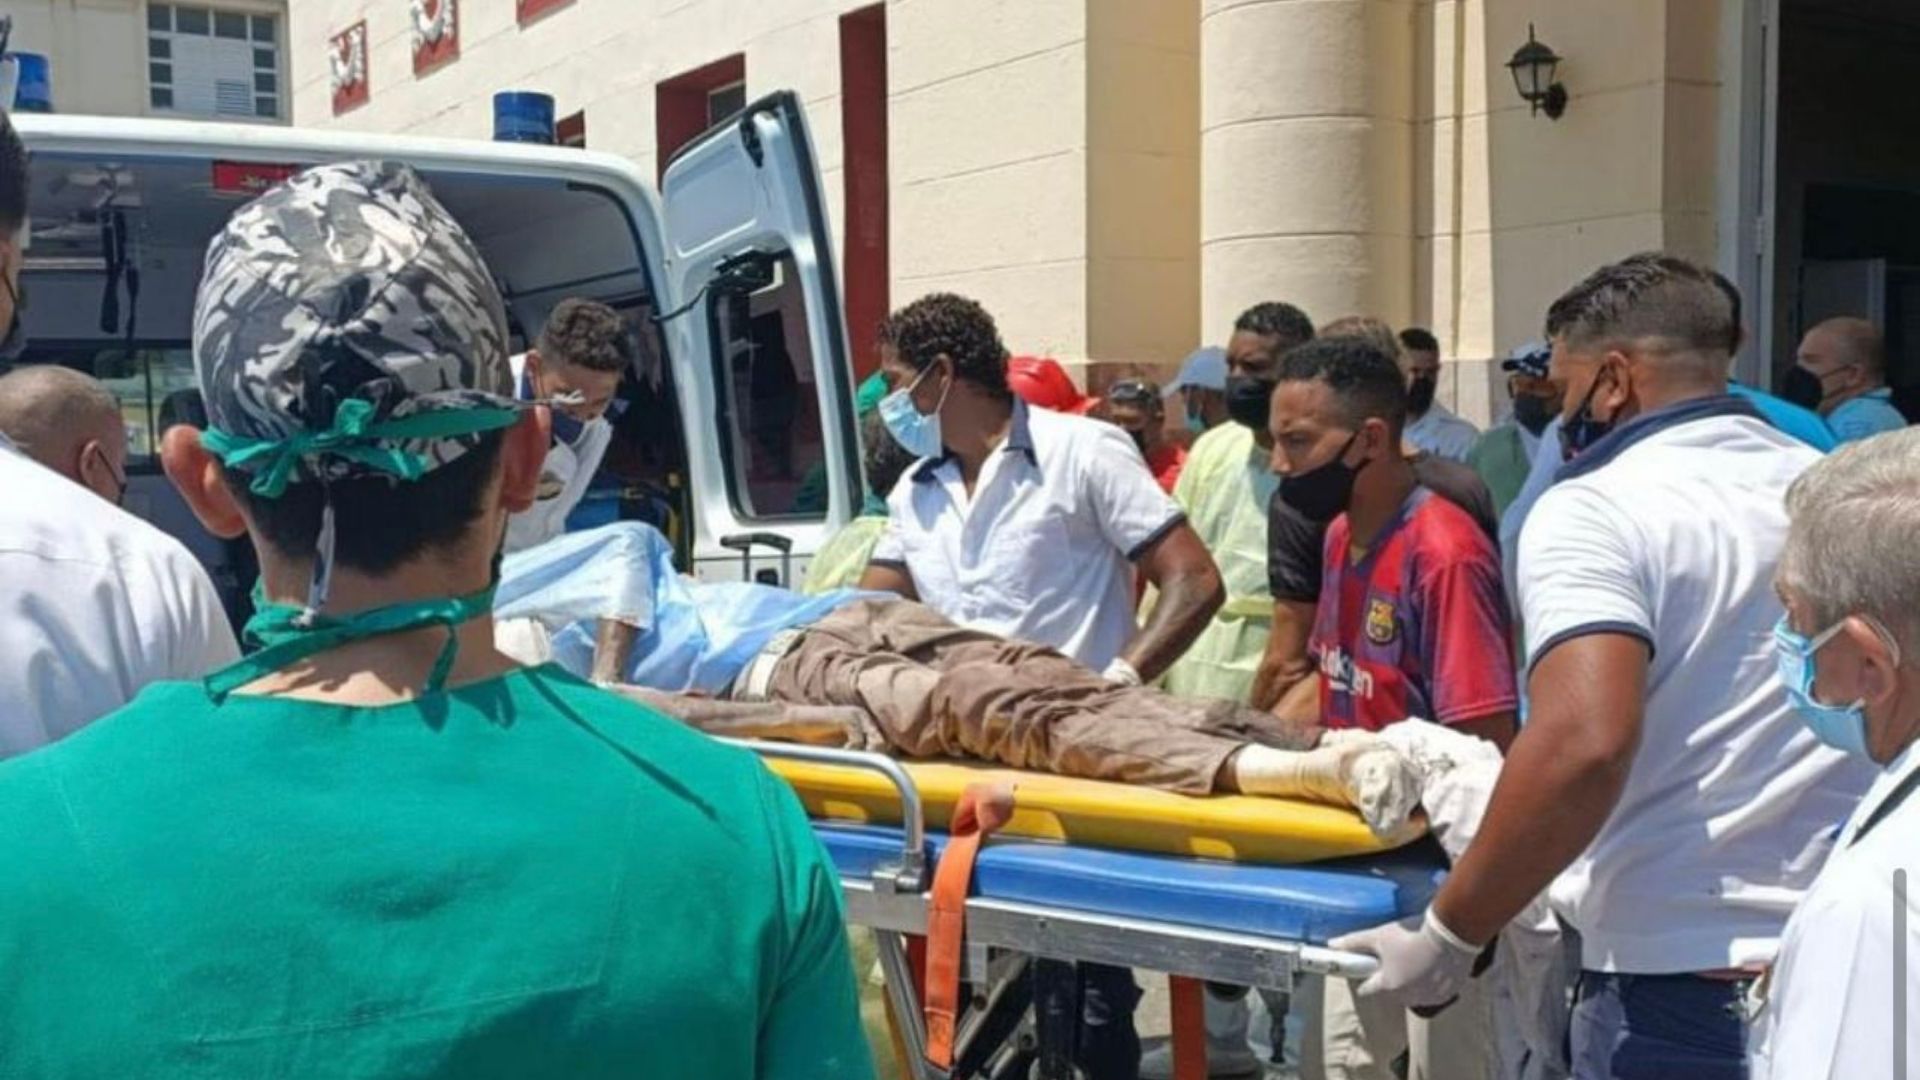 Autoridades sanitarias hacen llamado a donar sangre en hospitales de La Habana tras explosión en el Hotel Saratoga